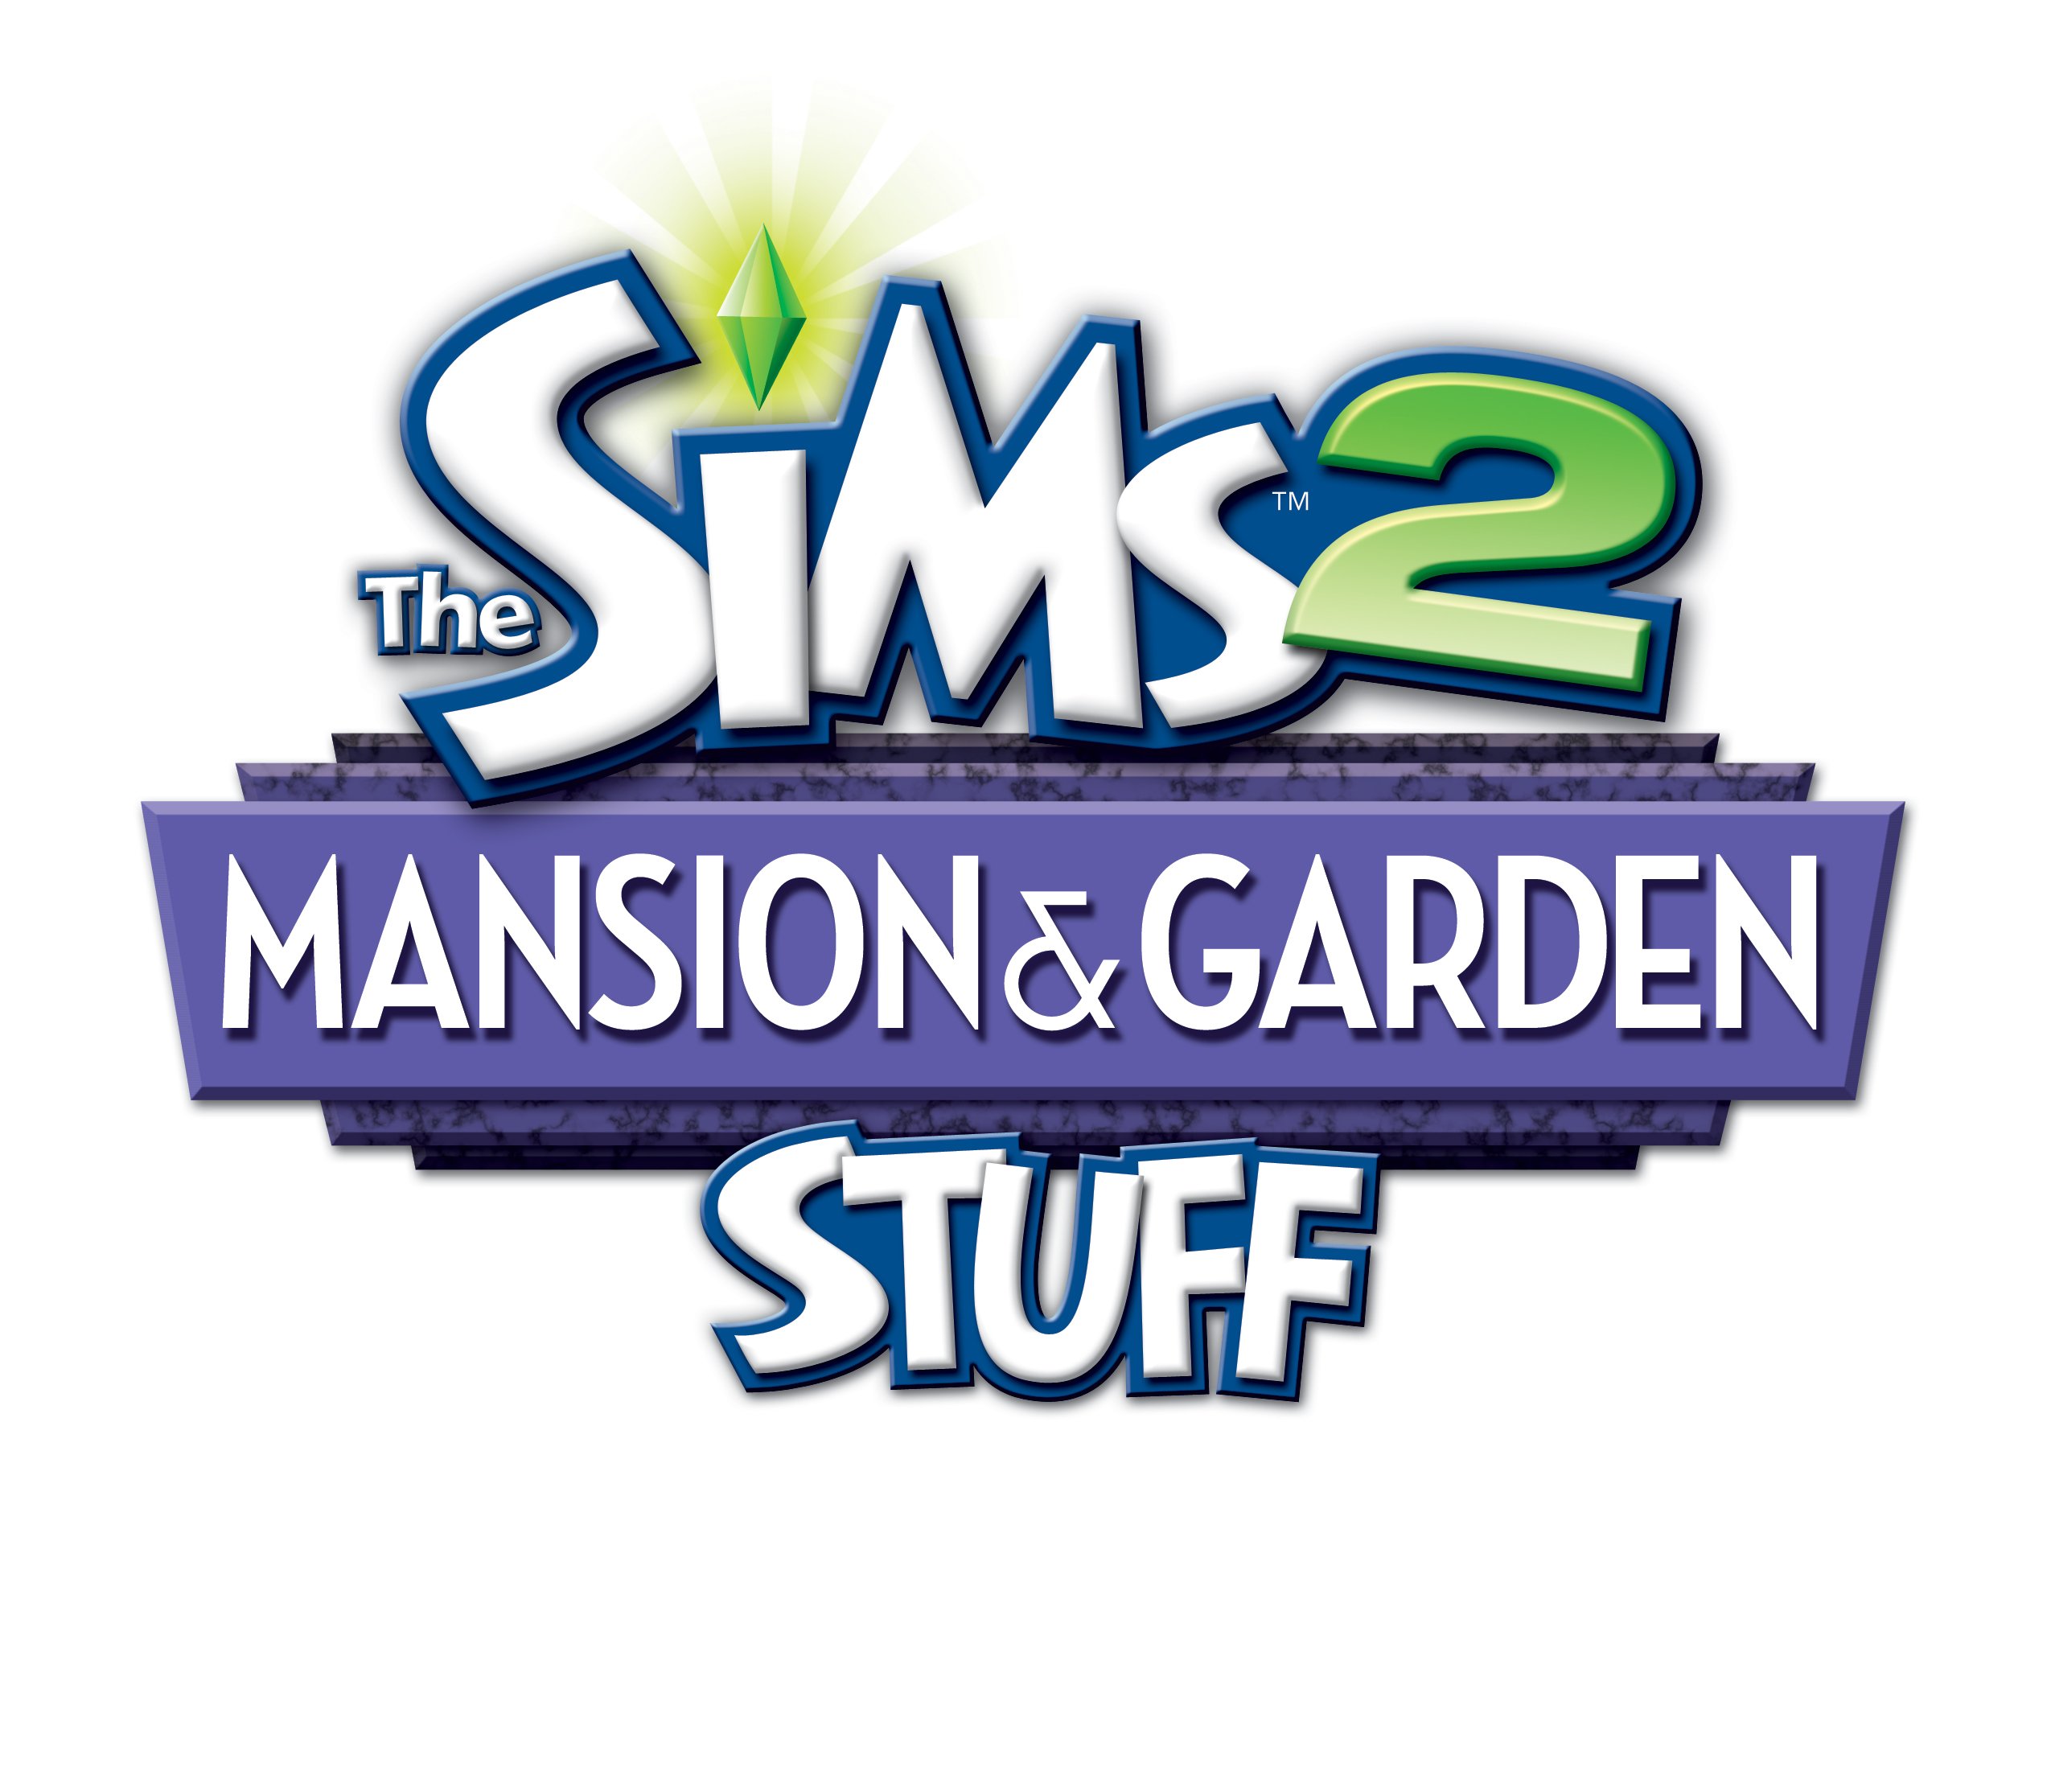 Gartenaccessoires Katalog Schön the Sims 2 Ð¡Ð°Ð´Ñ Ð¸ Ð¾ÑÐ¾Ð±Ð½ÑÐºÐ¸ 9 Ð¹ ÐºÐ°ÑÐ°Ð Ð¾Ð³ [ÐÑÑÐ¸Ð²] Prosims